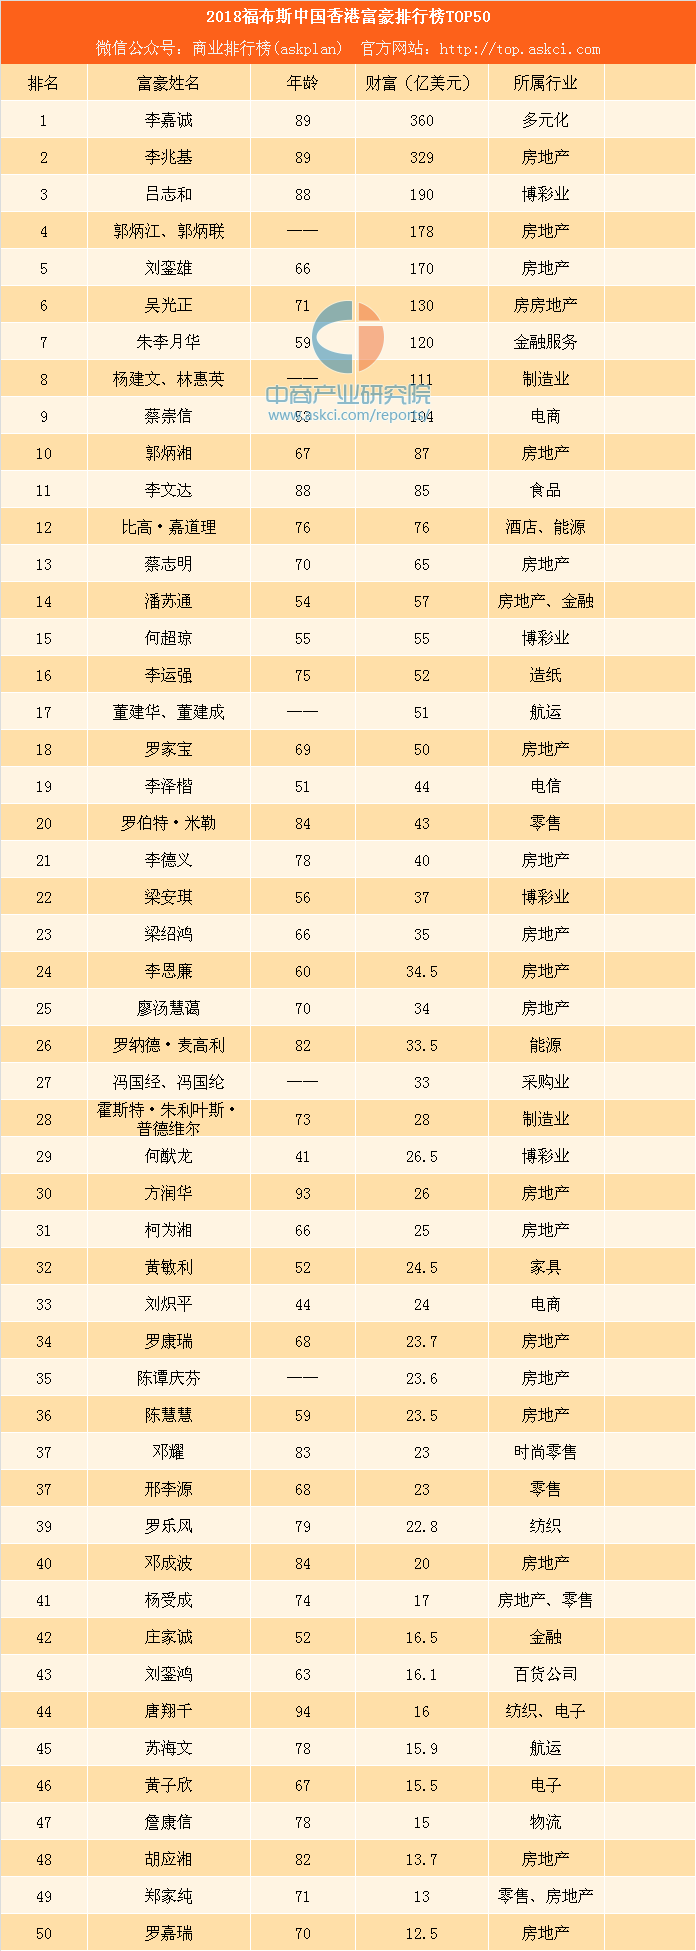 2018福布斯中国香港富豪排行榜top50李兆基增长最多房地产富豪数量最